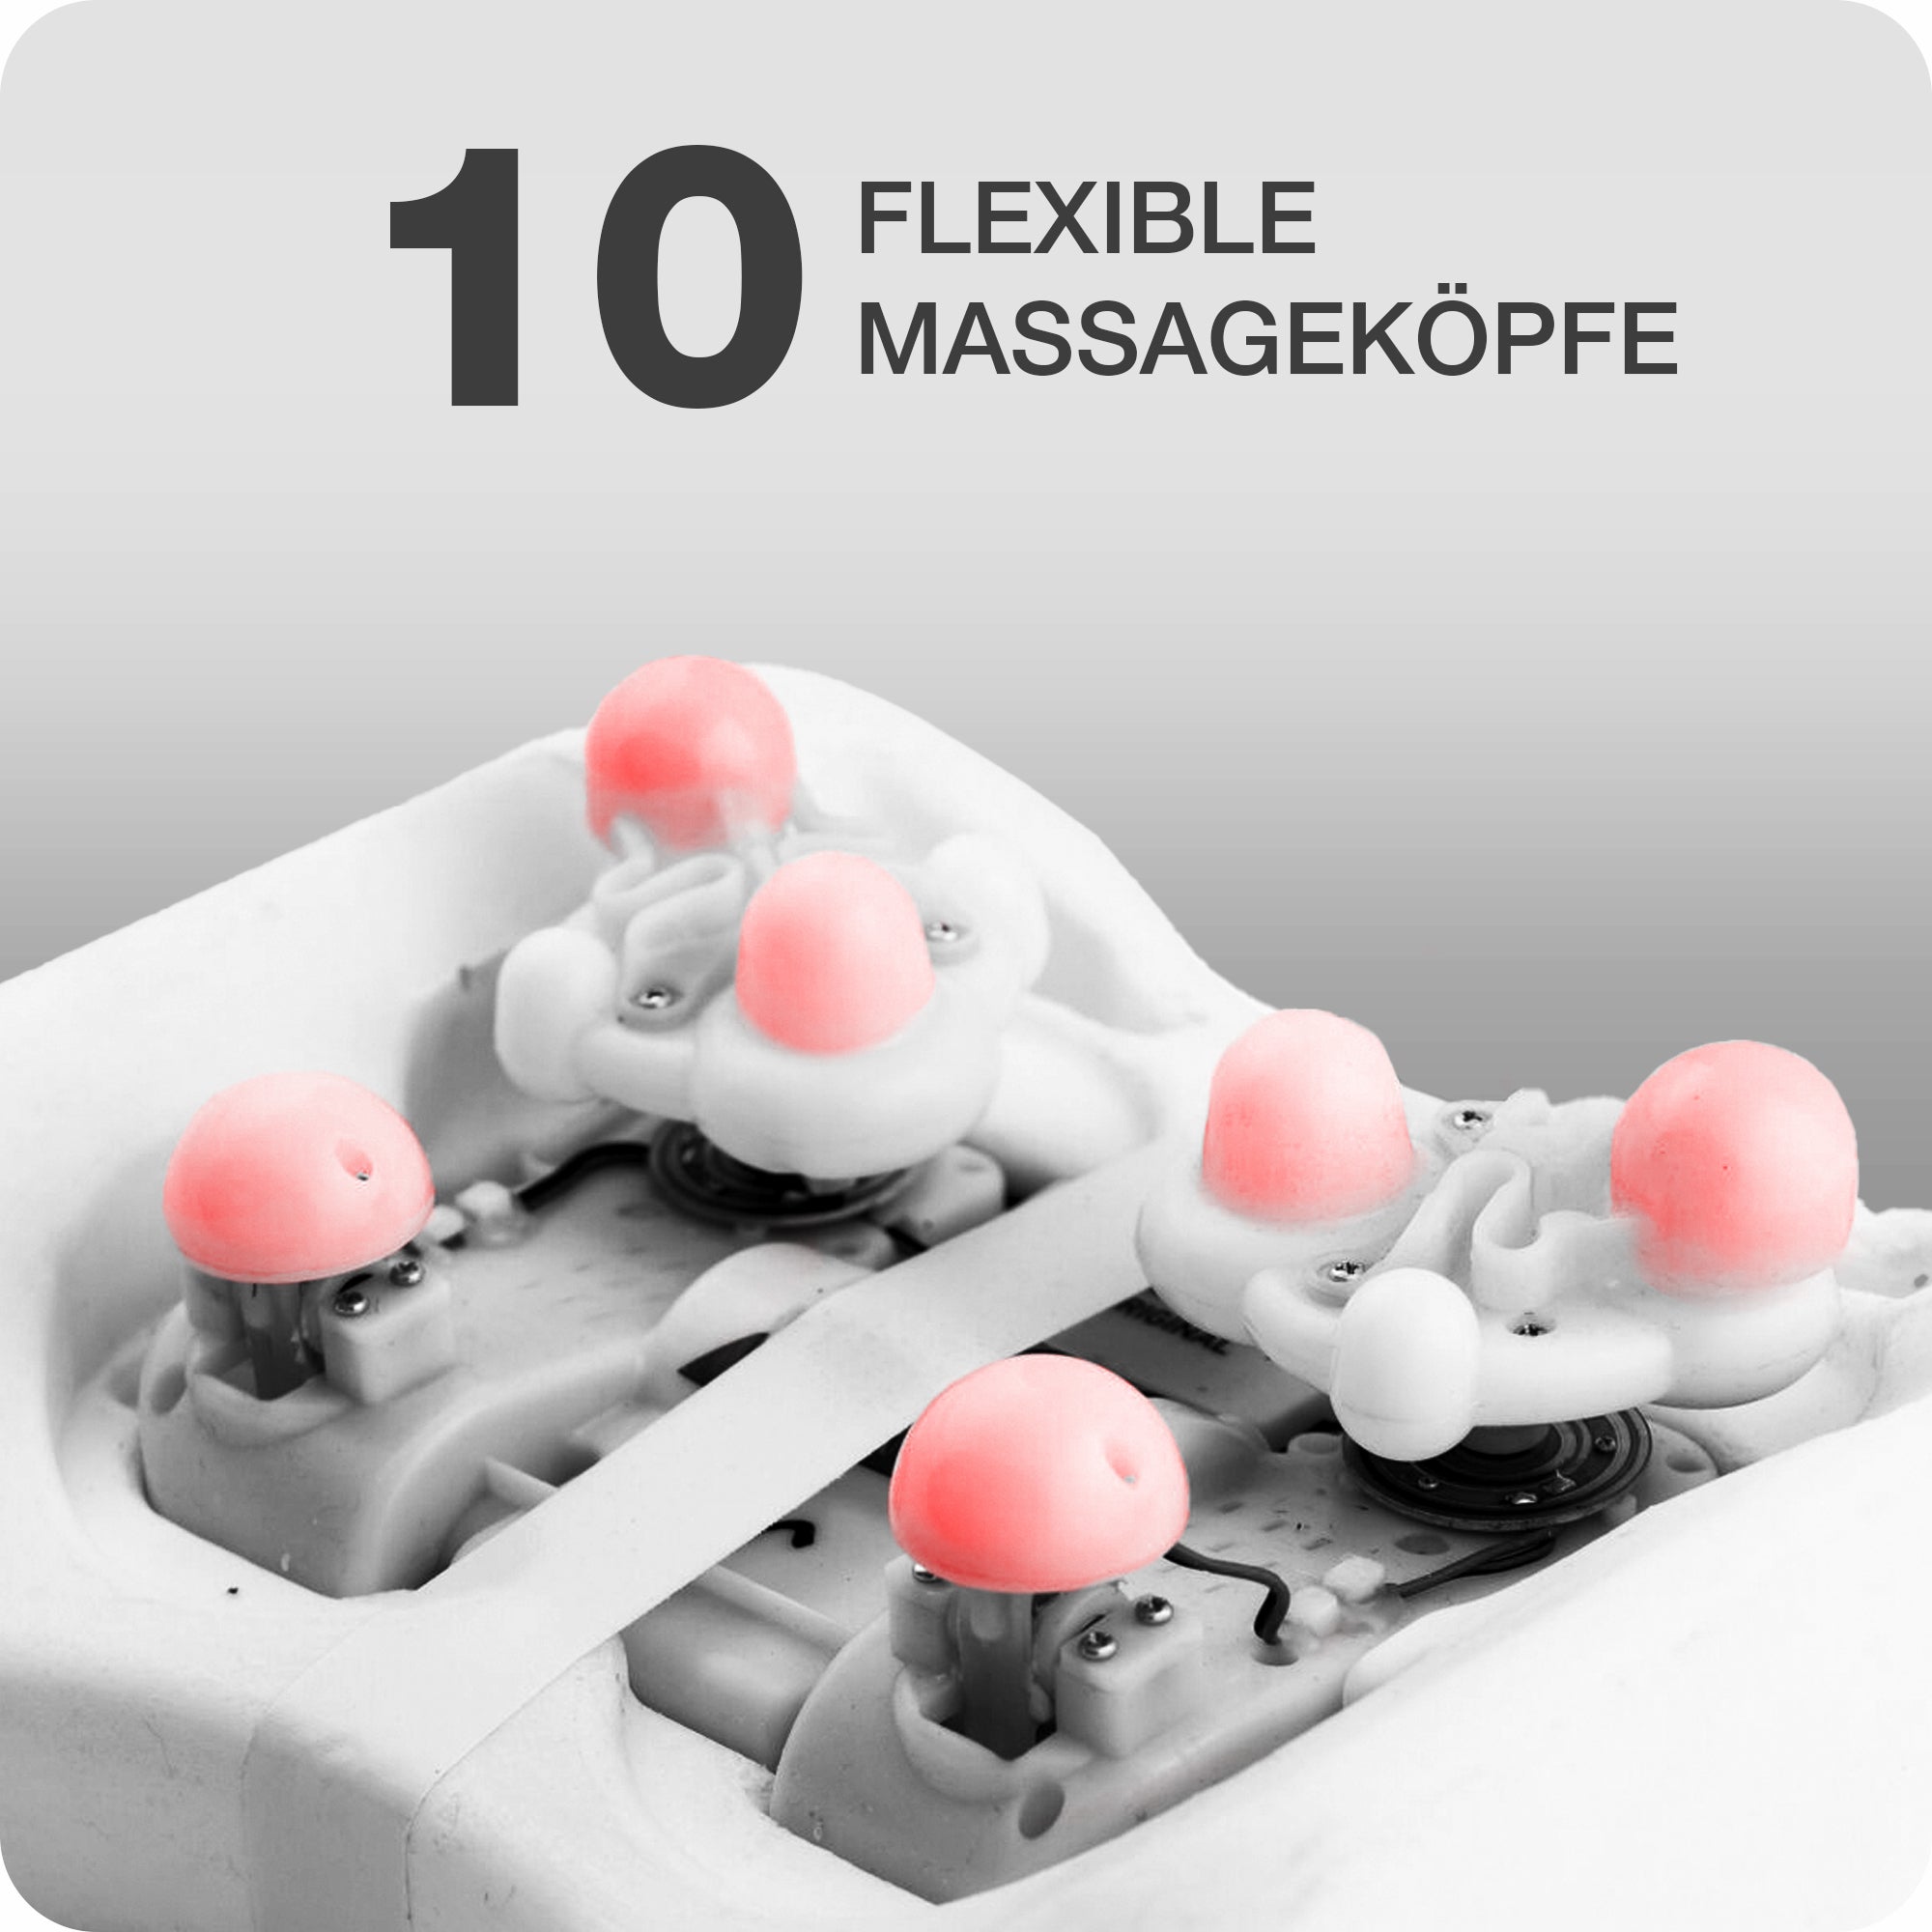 Das Massagekissen Krafty ist mit 10 flexiblen Massageköpfen ausgestattet